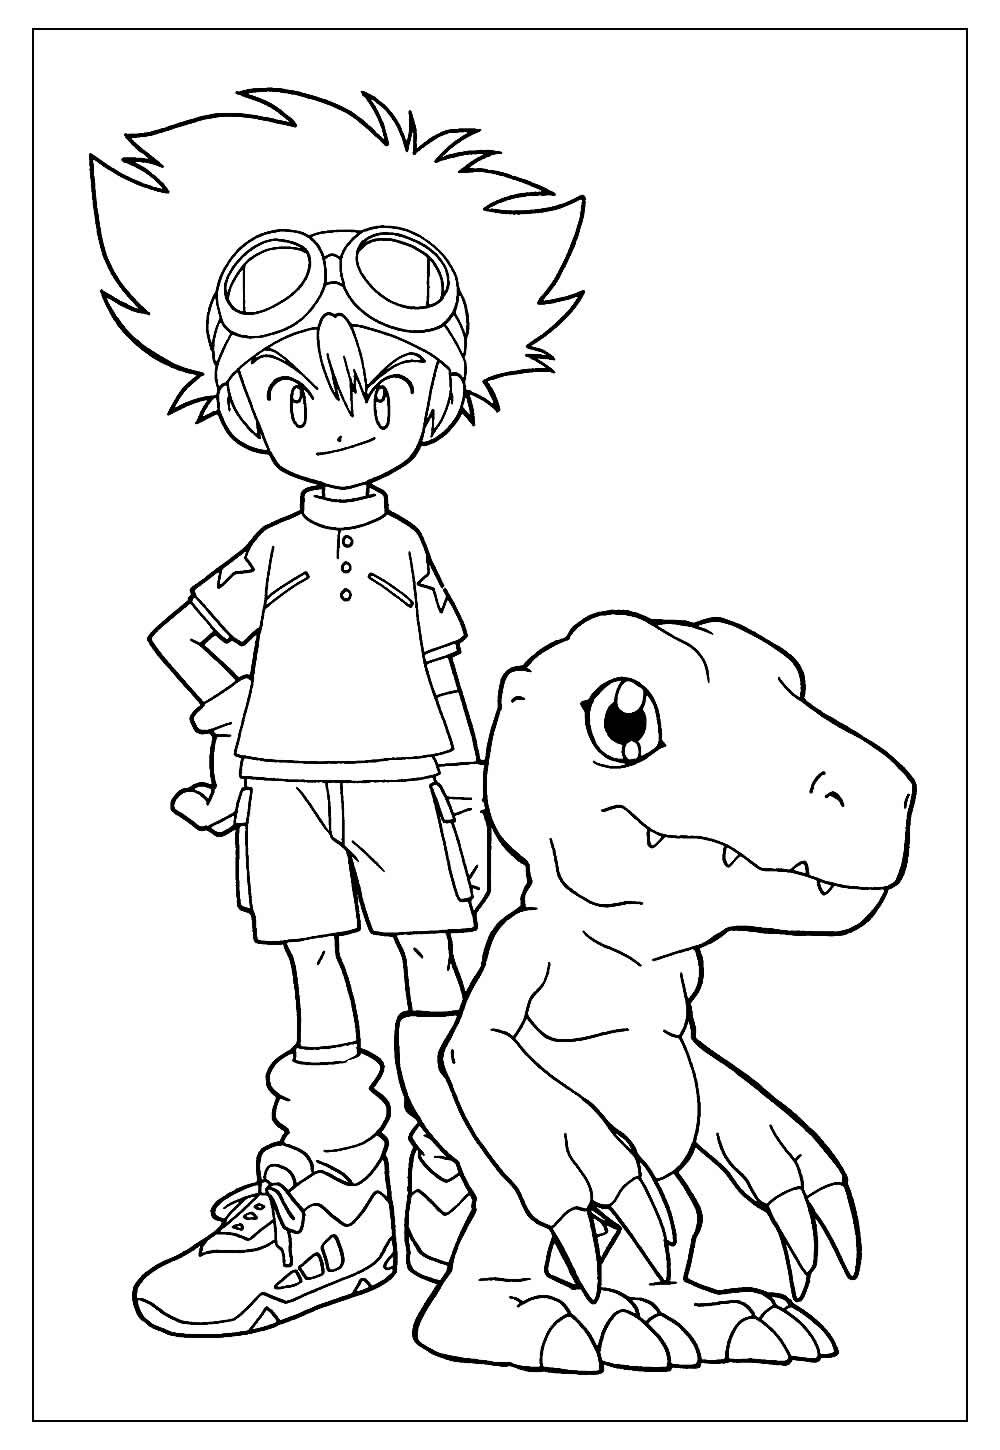 Desenho de Digimon